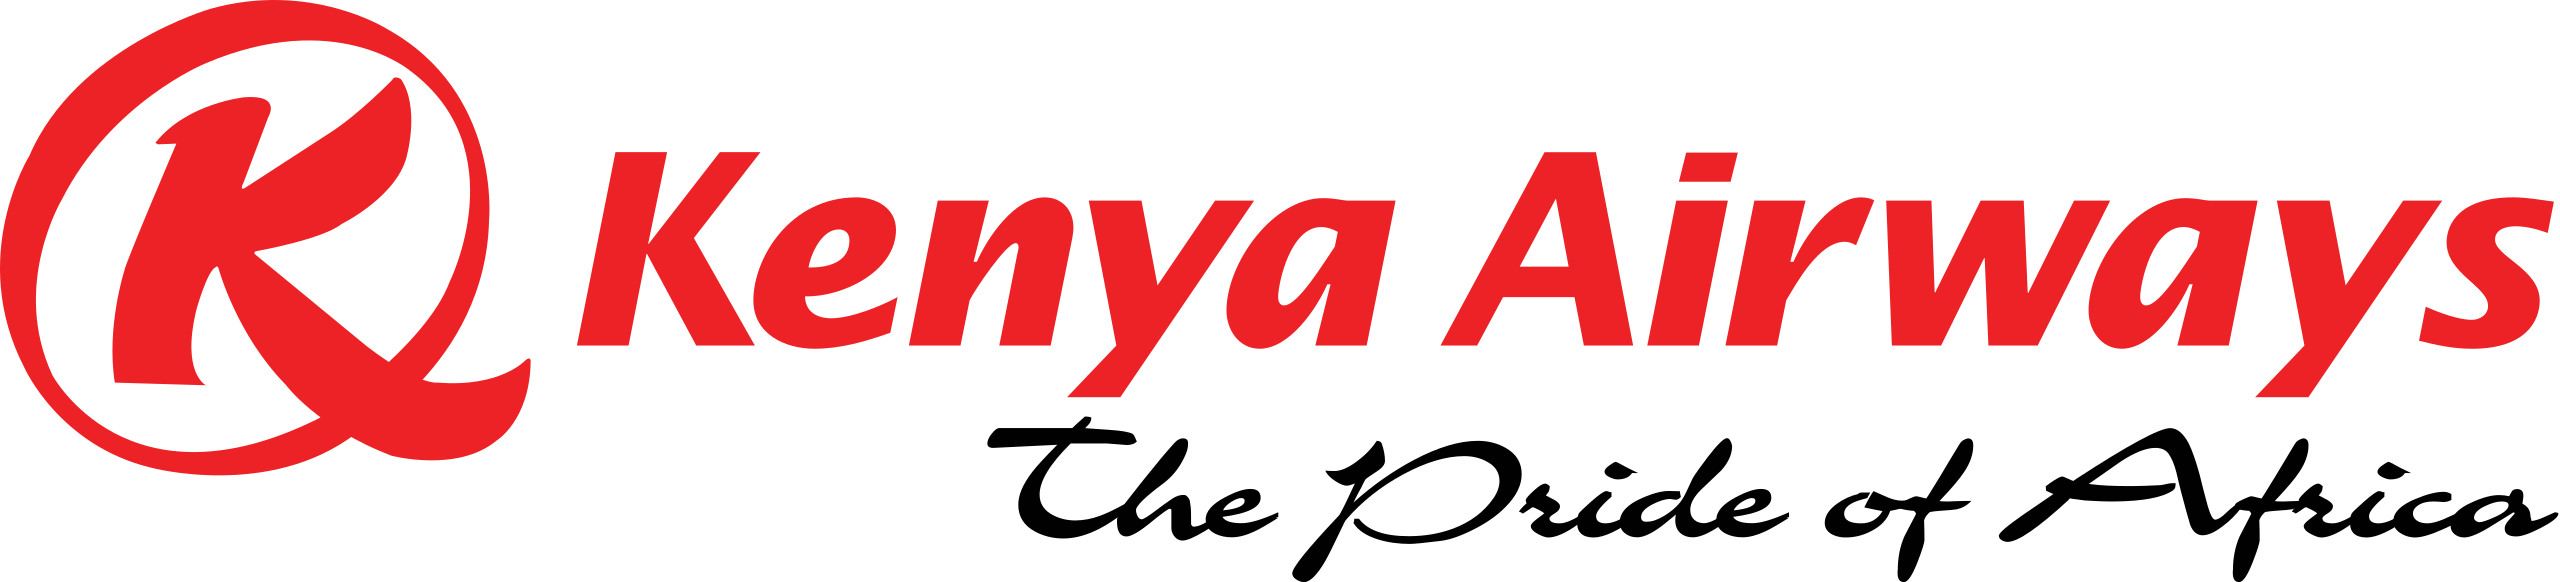 Kenya airways dummy ticket